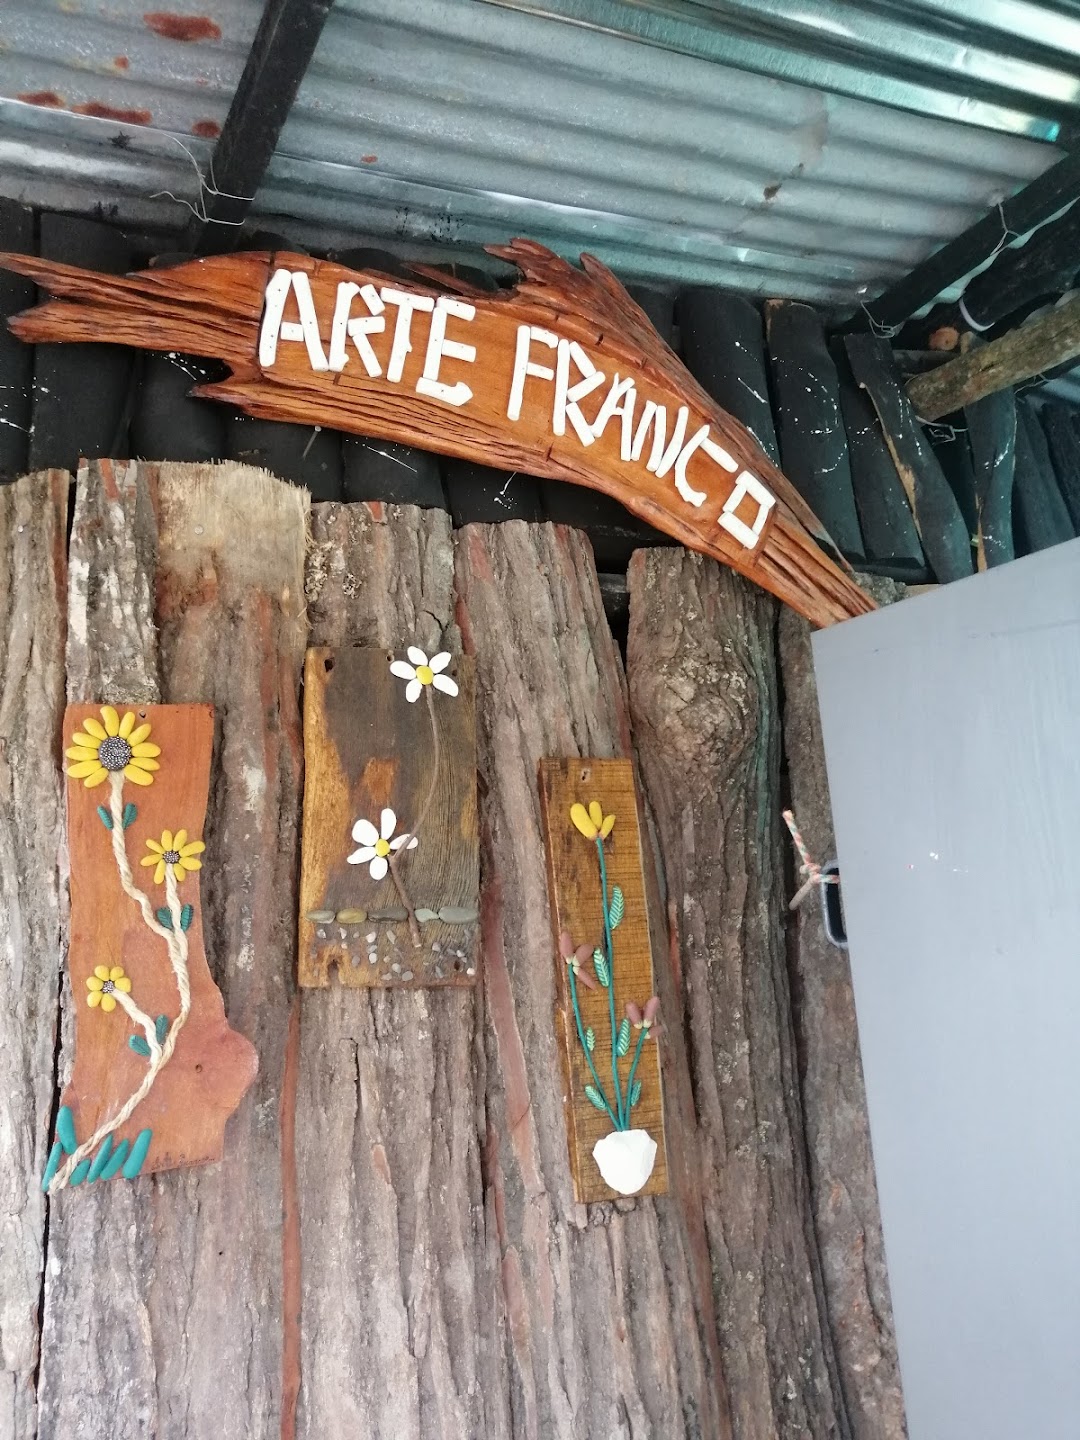 Arte Franco arte en madera